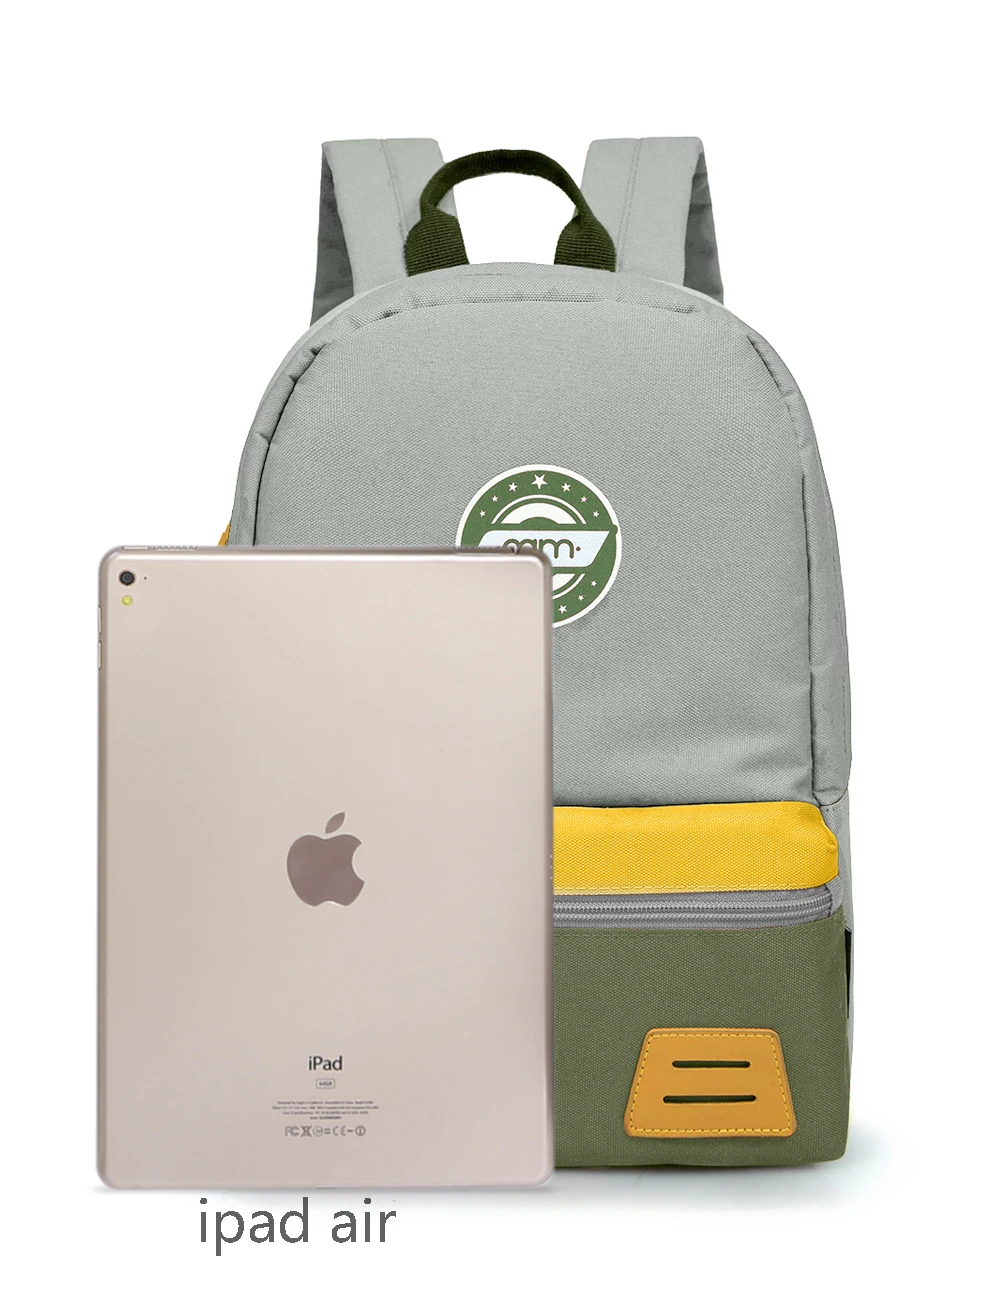 Mommore/Детский рюкзак для детского сада, разные размеры, парусиновая школьная сумка для мальчиков и девочек, сумка для пикника, милая сумка для ланча для детей